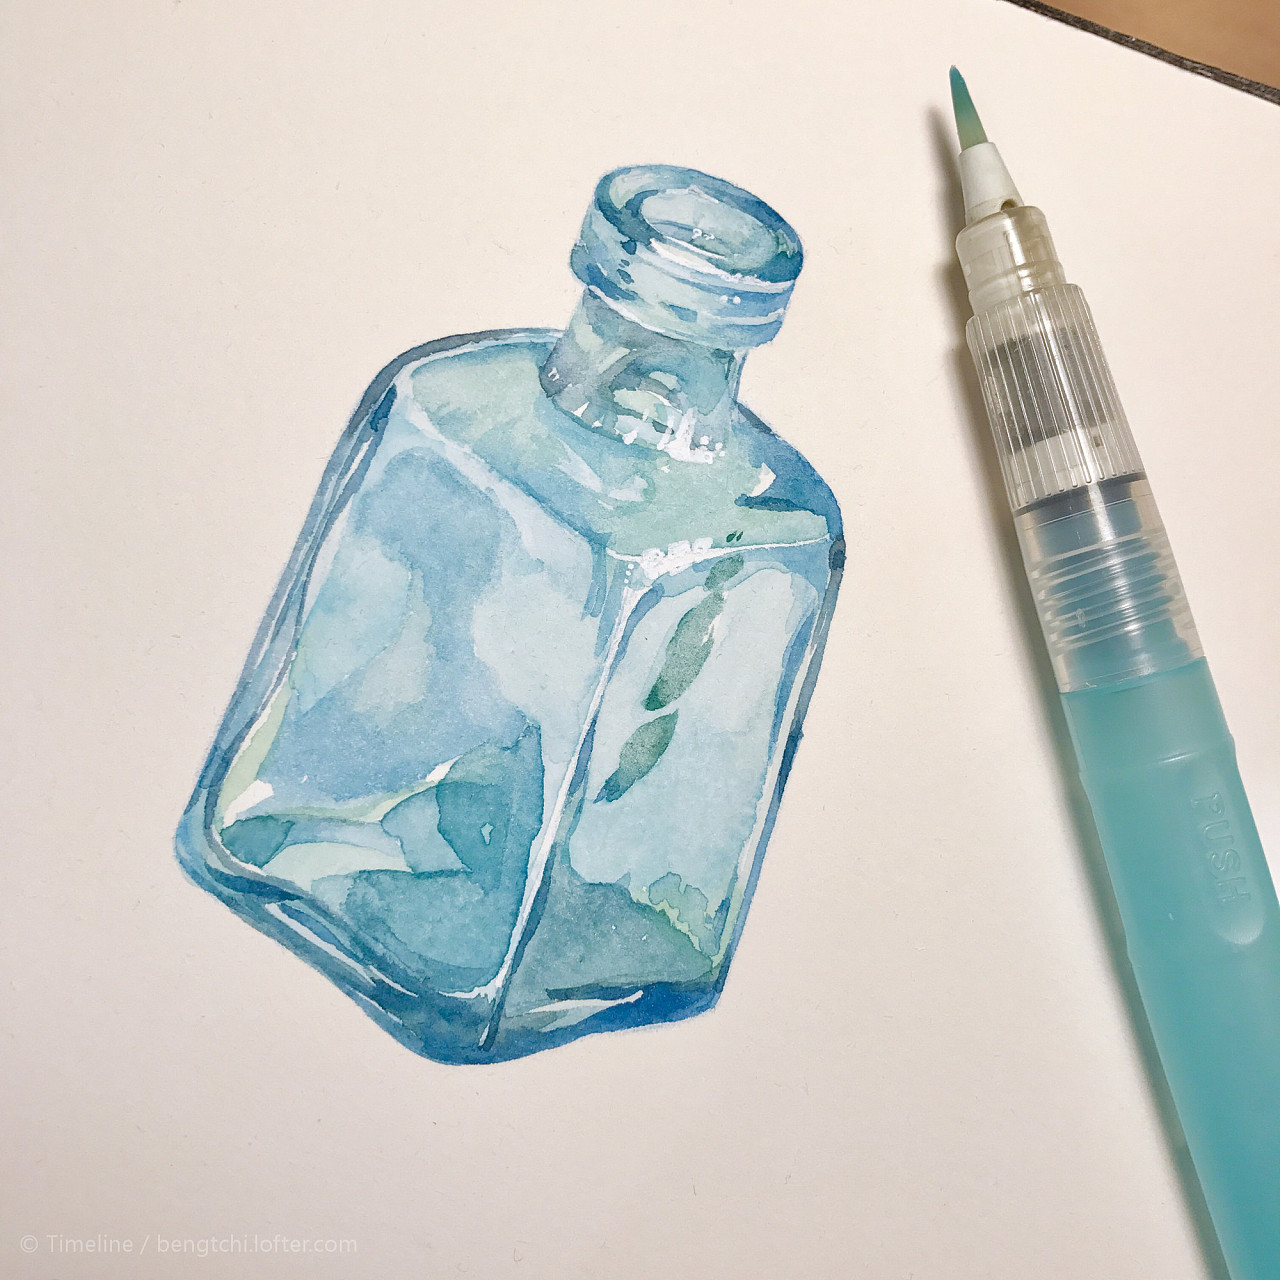 无印良品的环保水瓶只有一个“水”字？这些矿泉水的包装设计也不输_元素